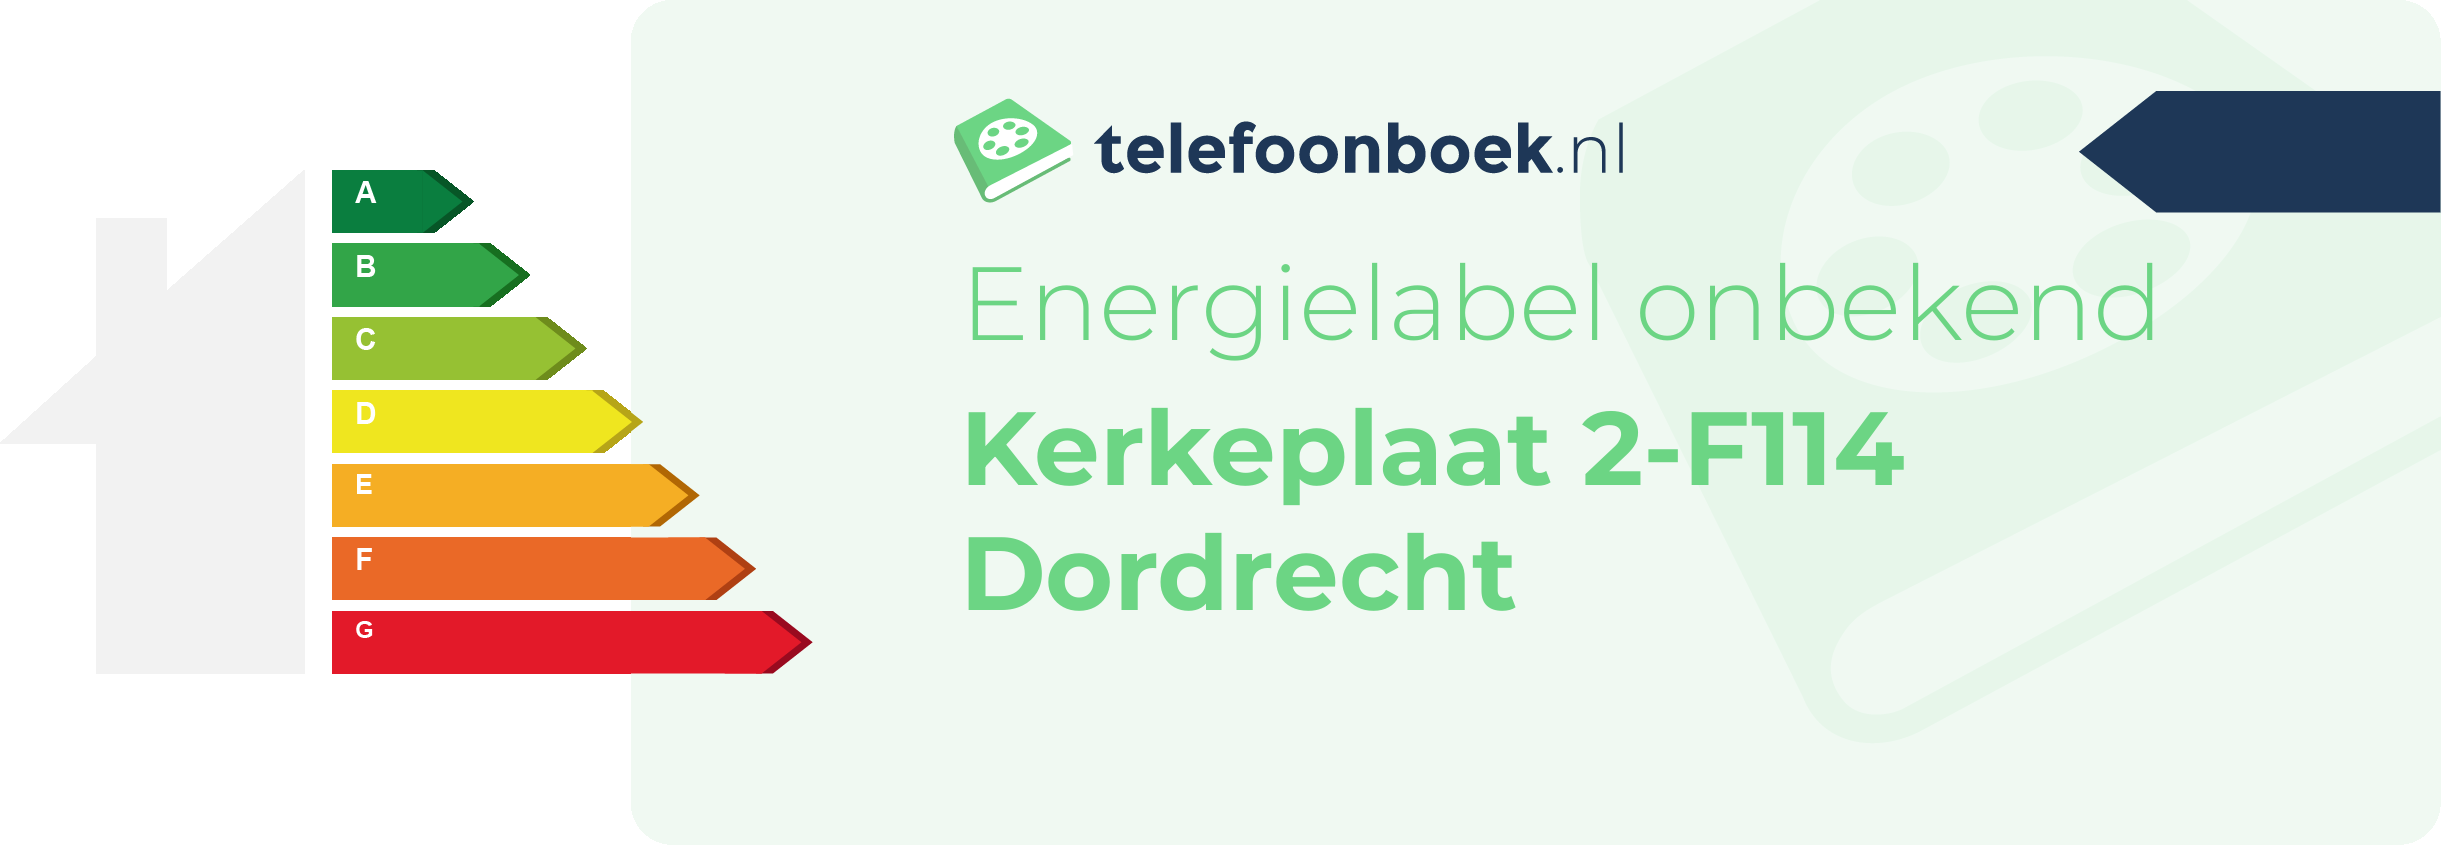 Energielabel Kerkeplaat 2-F114 Dordrecht